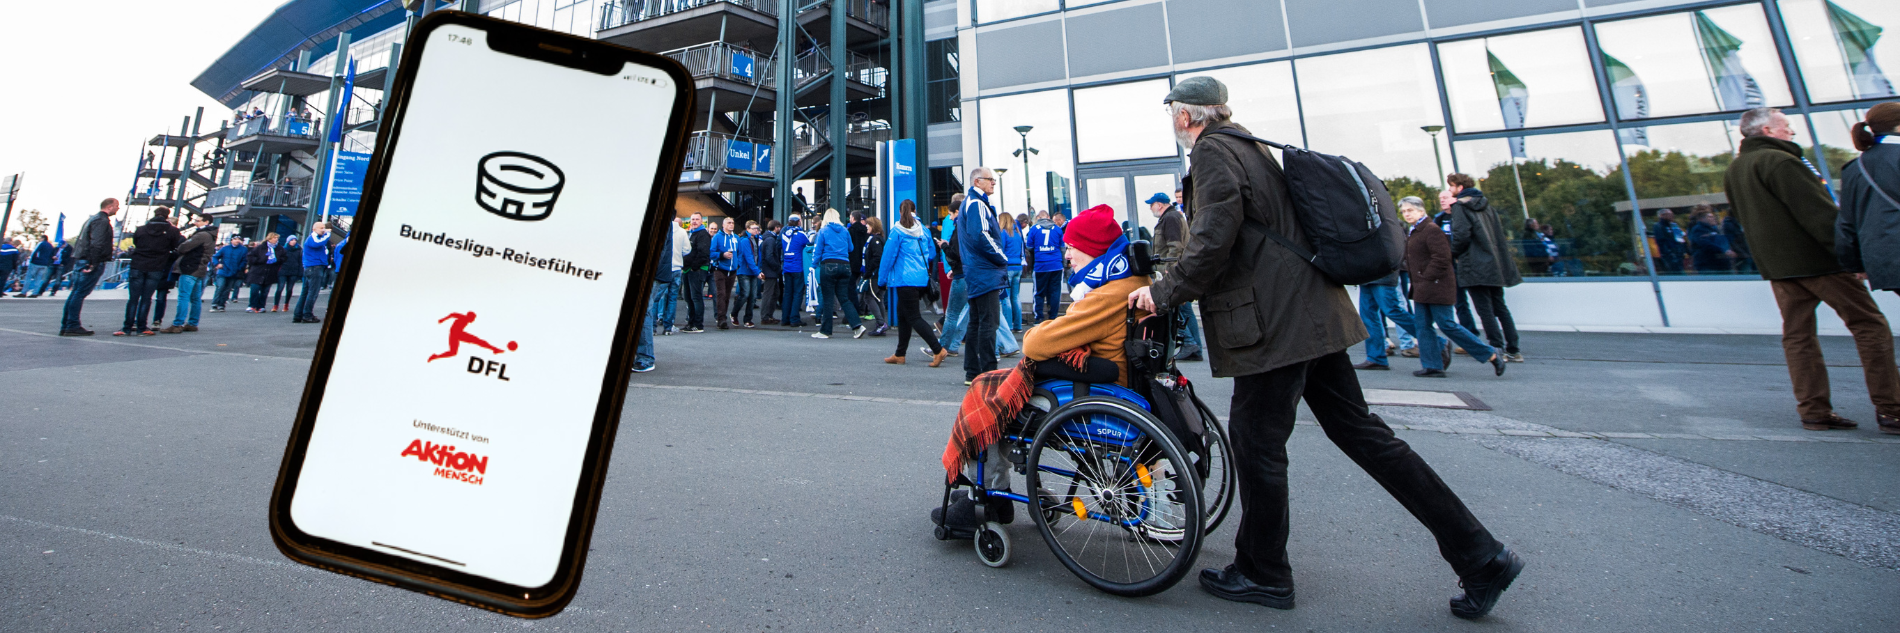 • Ein Fan im Rollstuhl und eine Begleitperson im Umlauf eines Stadions. Davor ein Handy mit dem Startbildschirm der App mit Bundesliga-Reiseführer-Schriftzug und den Logos von DFL und Aktion Mensch.